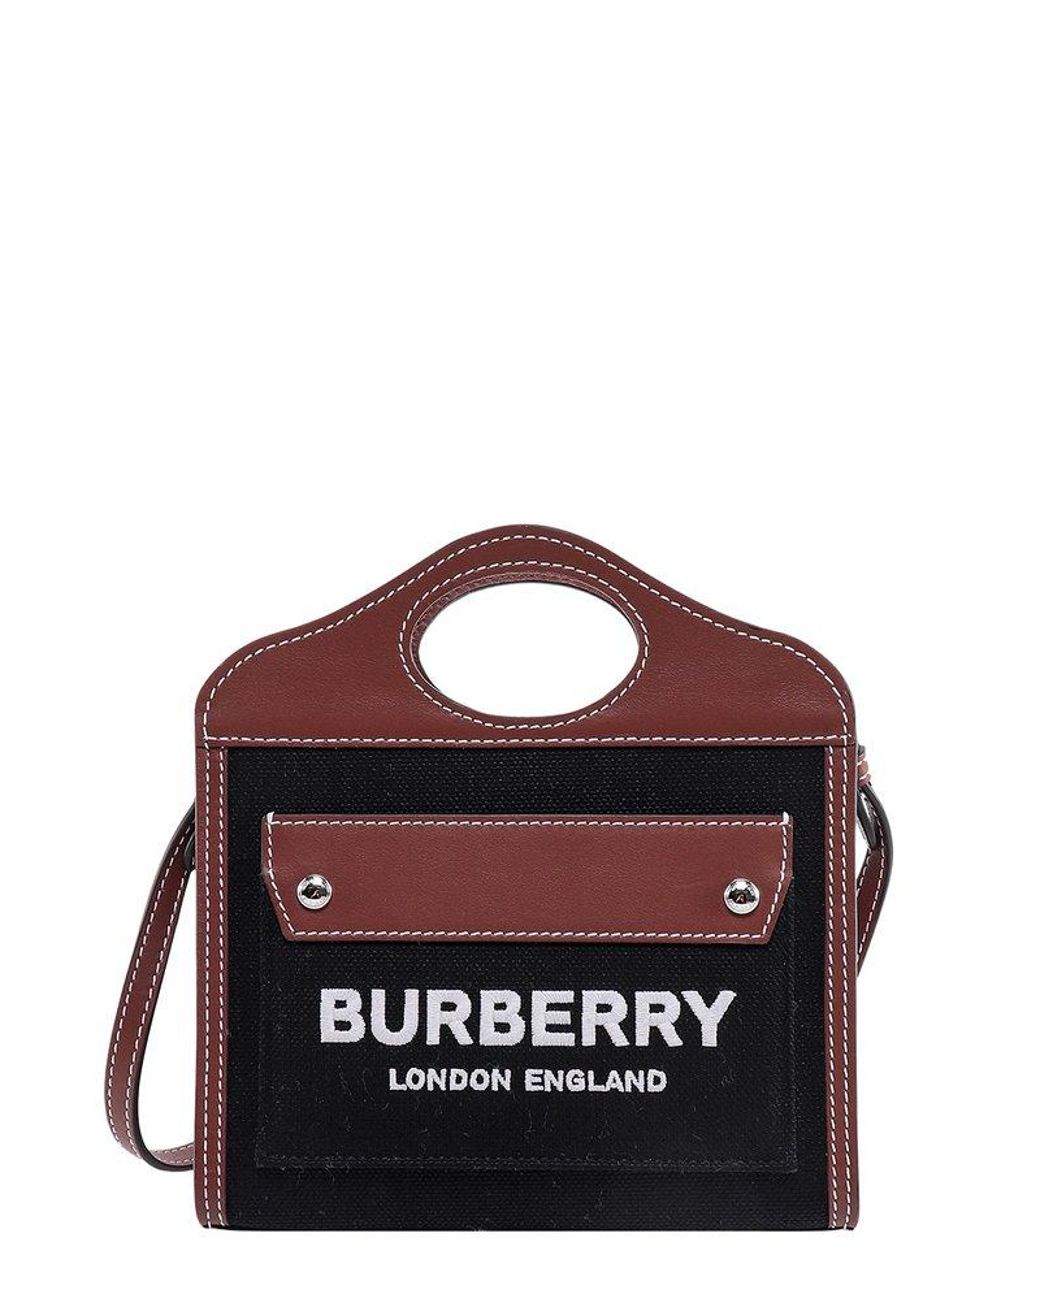 Ll Mn Pocket Dtl Ll6 Tote Bag - Burberry - Natural/Tan - Cotton